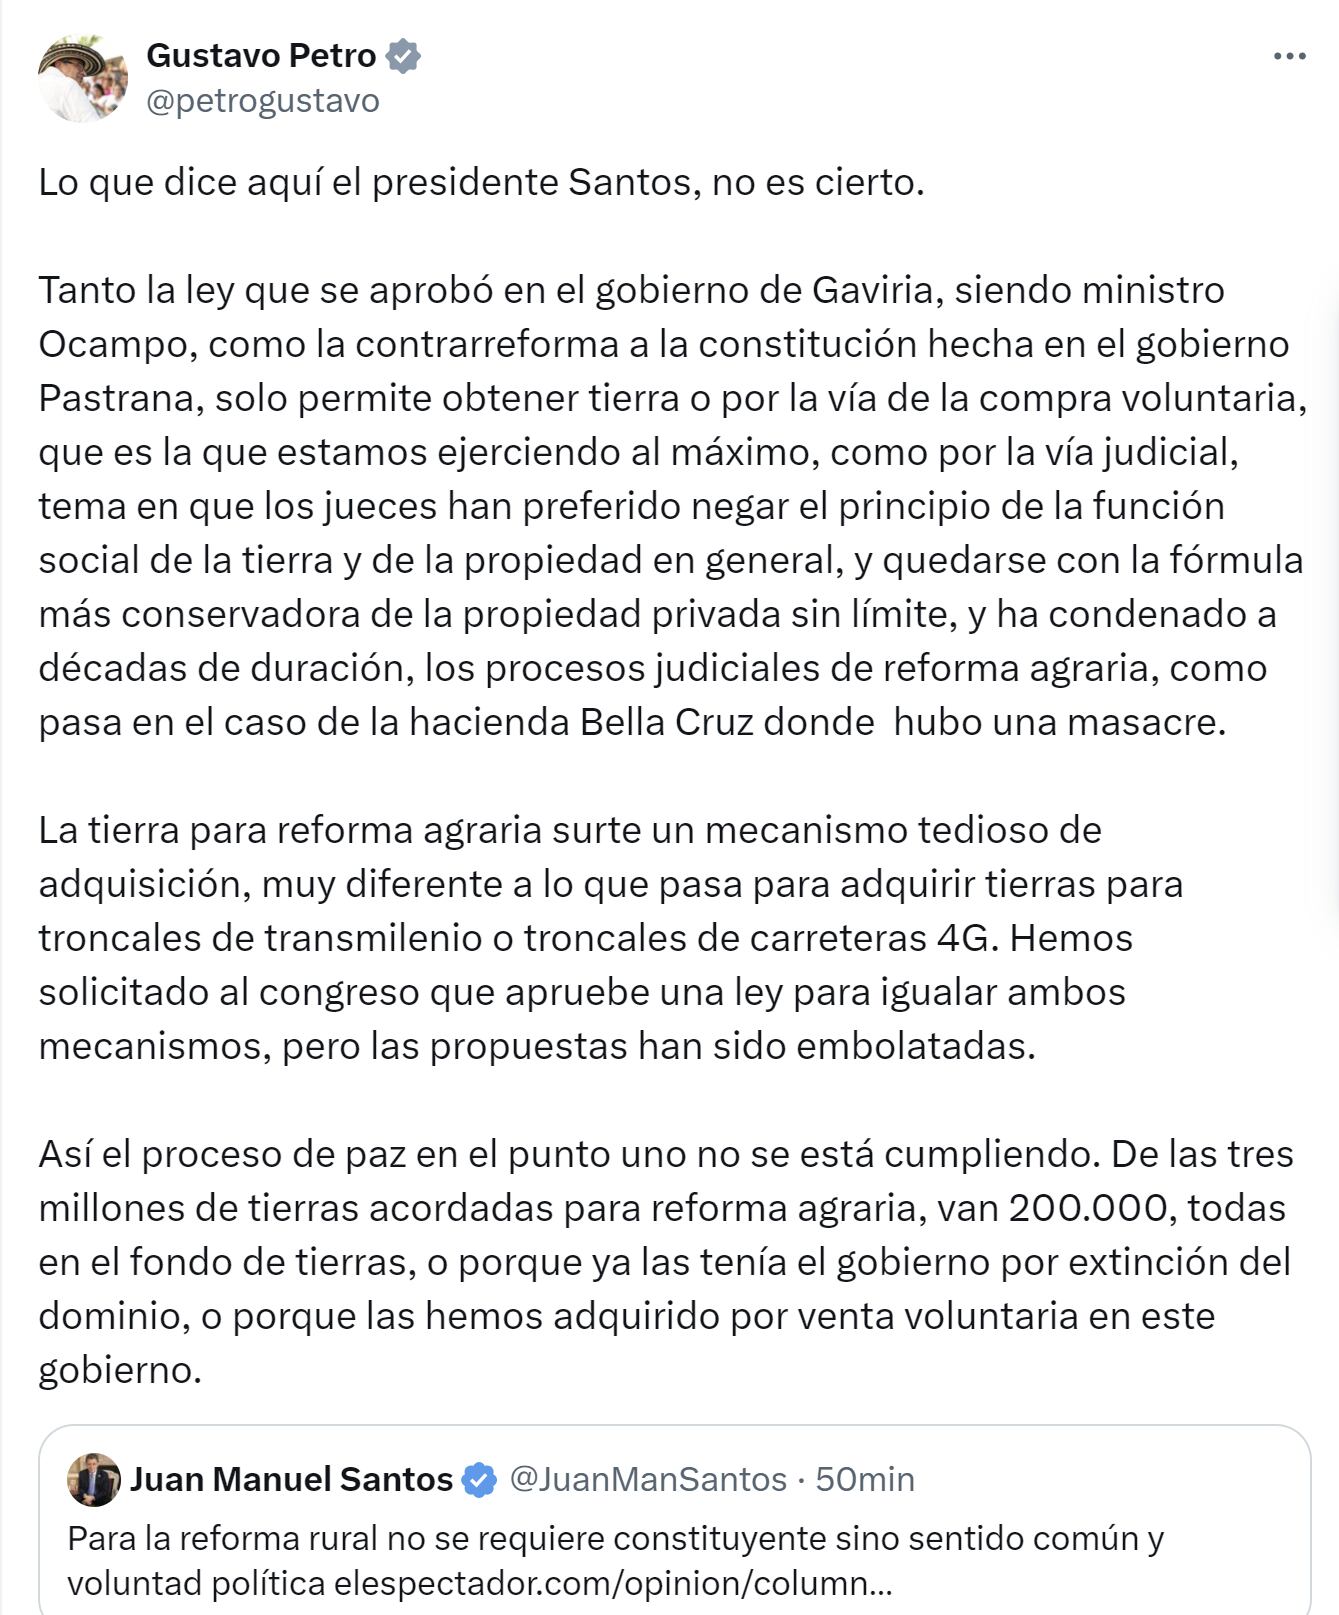 El presidente Gustavo Petro contradijo a Juan Manuel Santos sobre constituyente